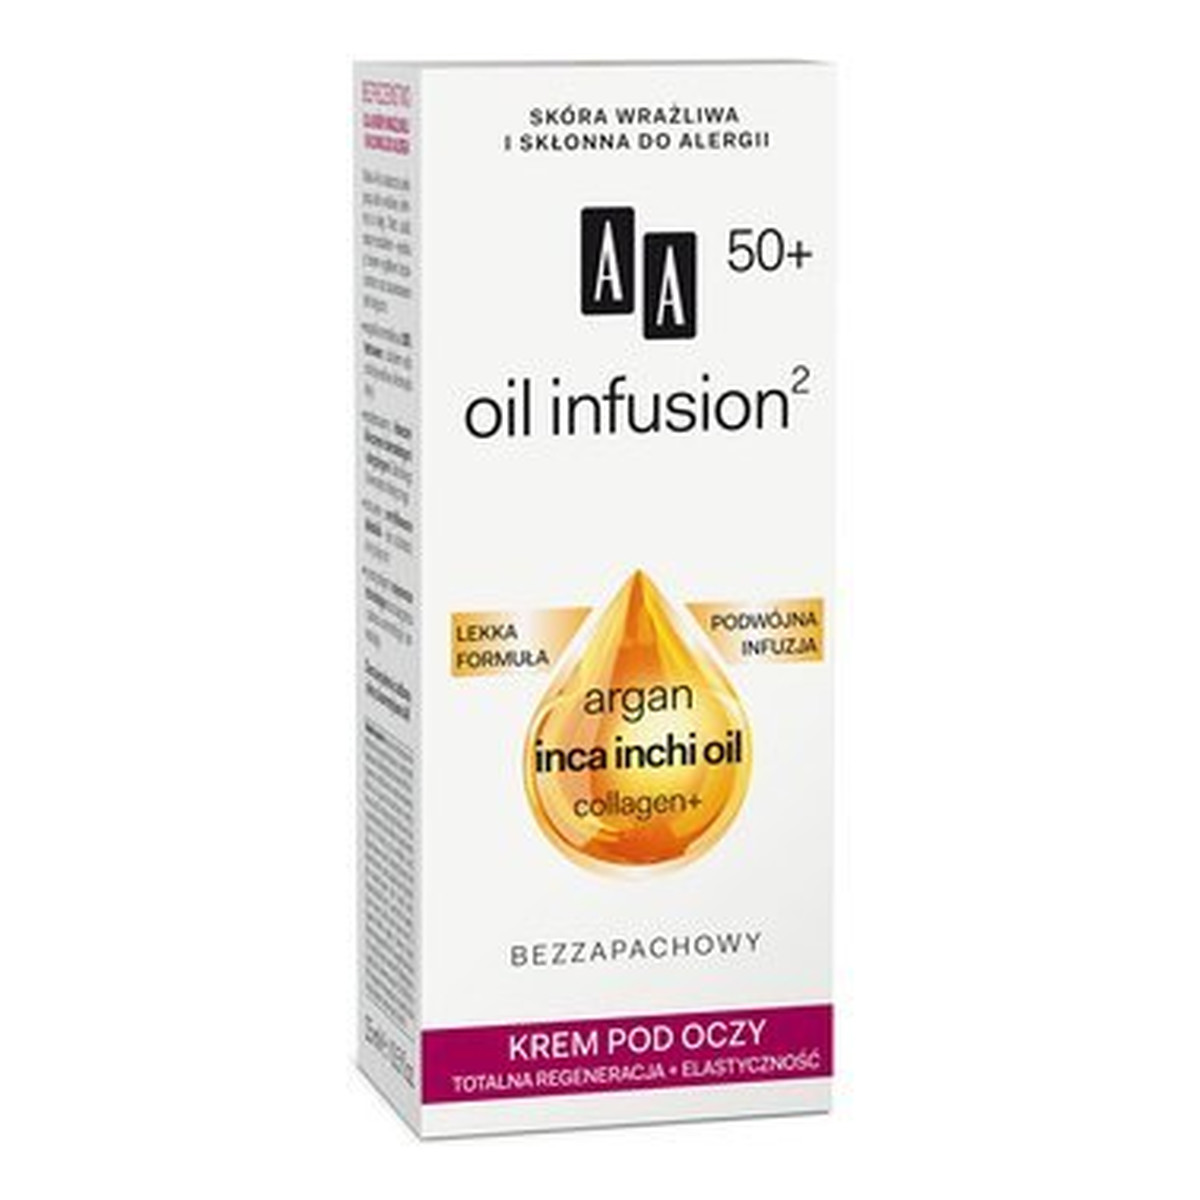 AA Oil Infusion2 50+ Krem Pod Oczy Totalna Regeneracja+Elastyczność 15ml